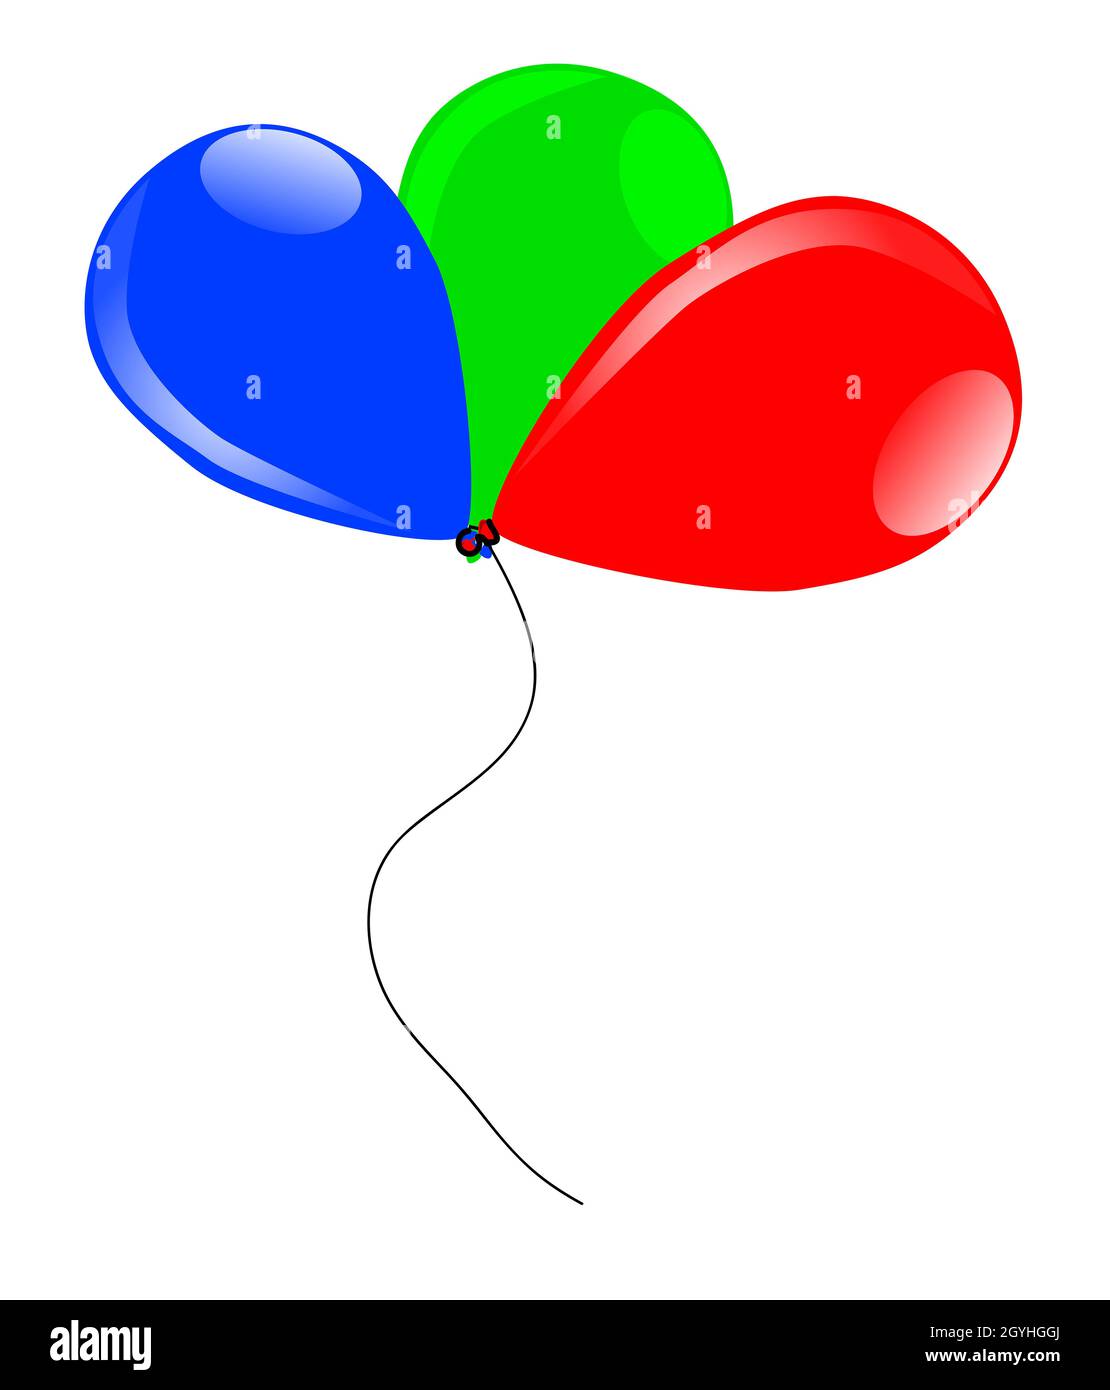 3 farbige Luftballons, rot, grün und blau schwebend, mit einer Schnur zusammengebunden Stockfoto